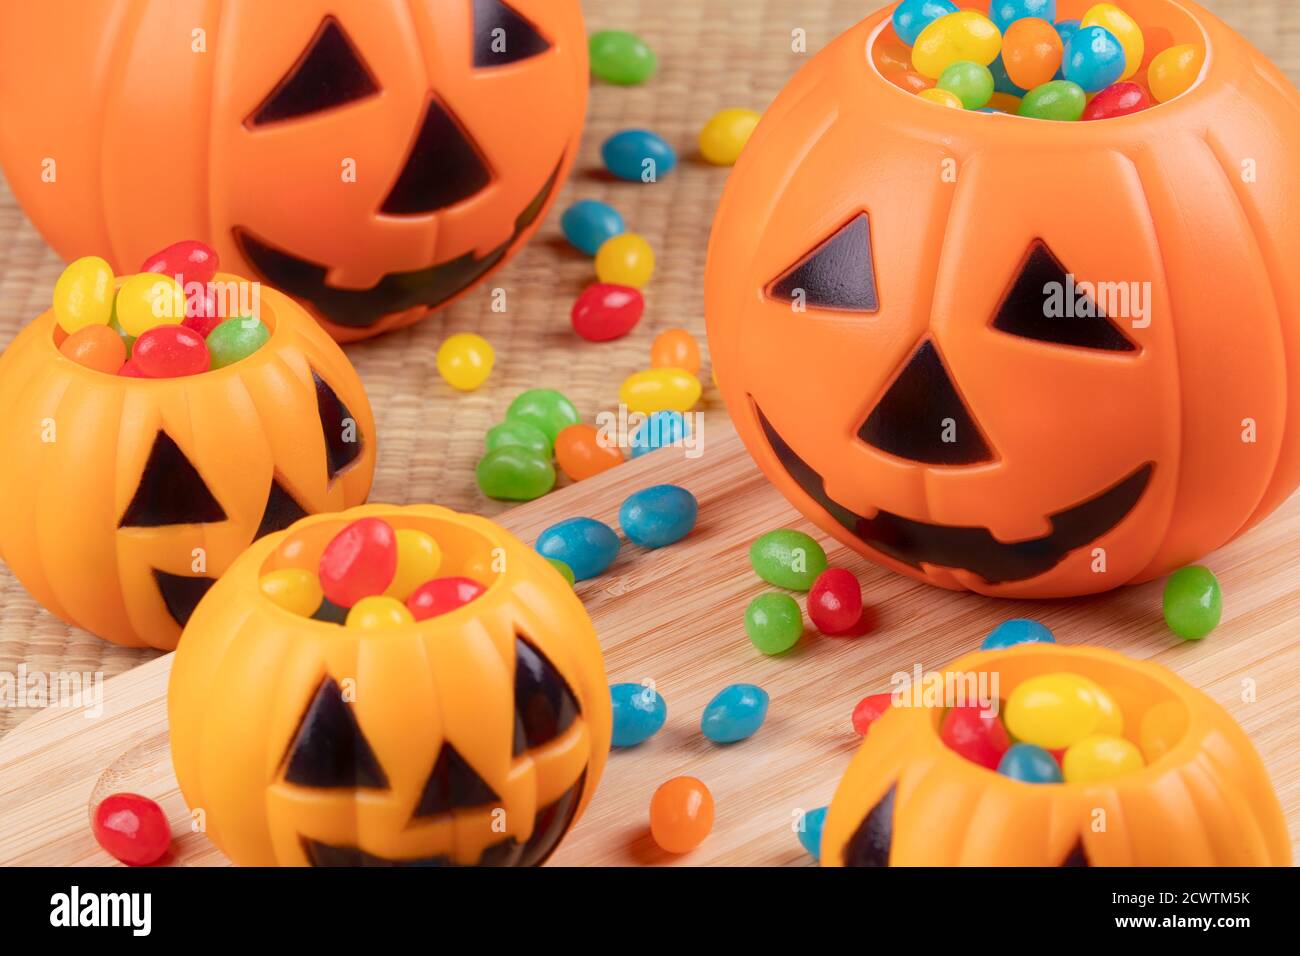 Decoraciones de Halloween usando pumkins de plástico y frijoles de gelatina en un fondo de madera Foto de stock